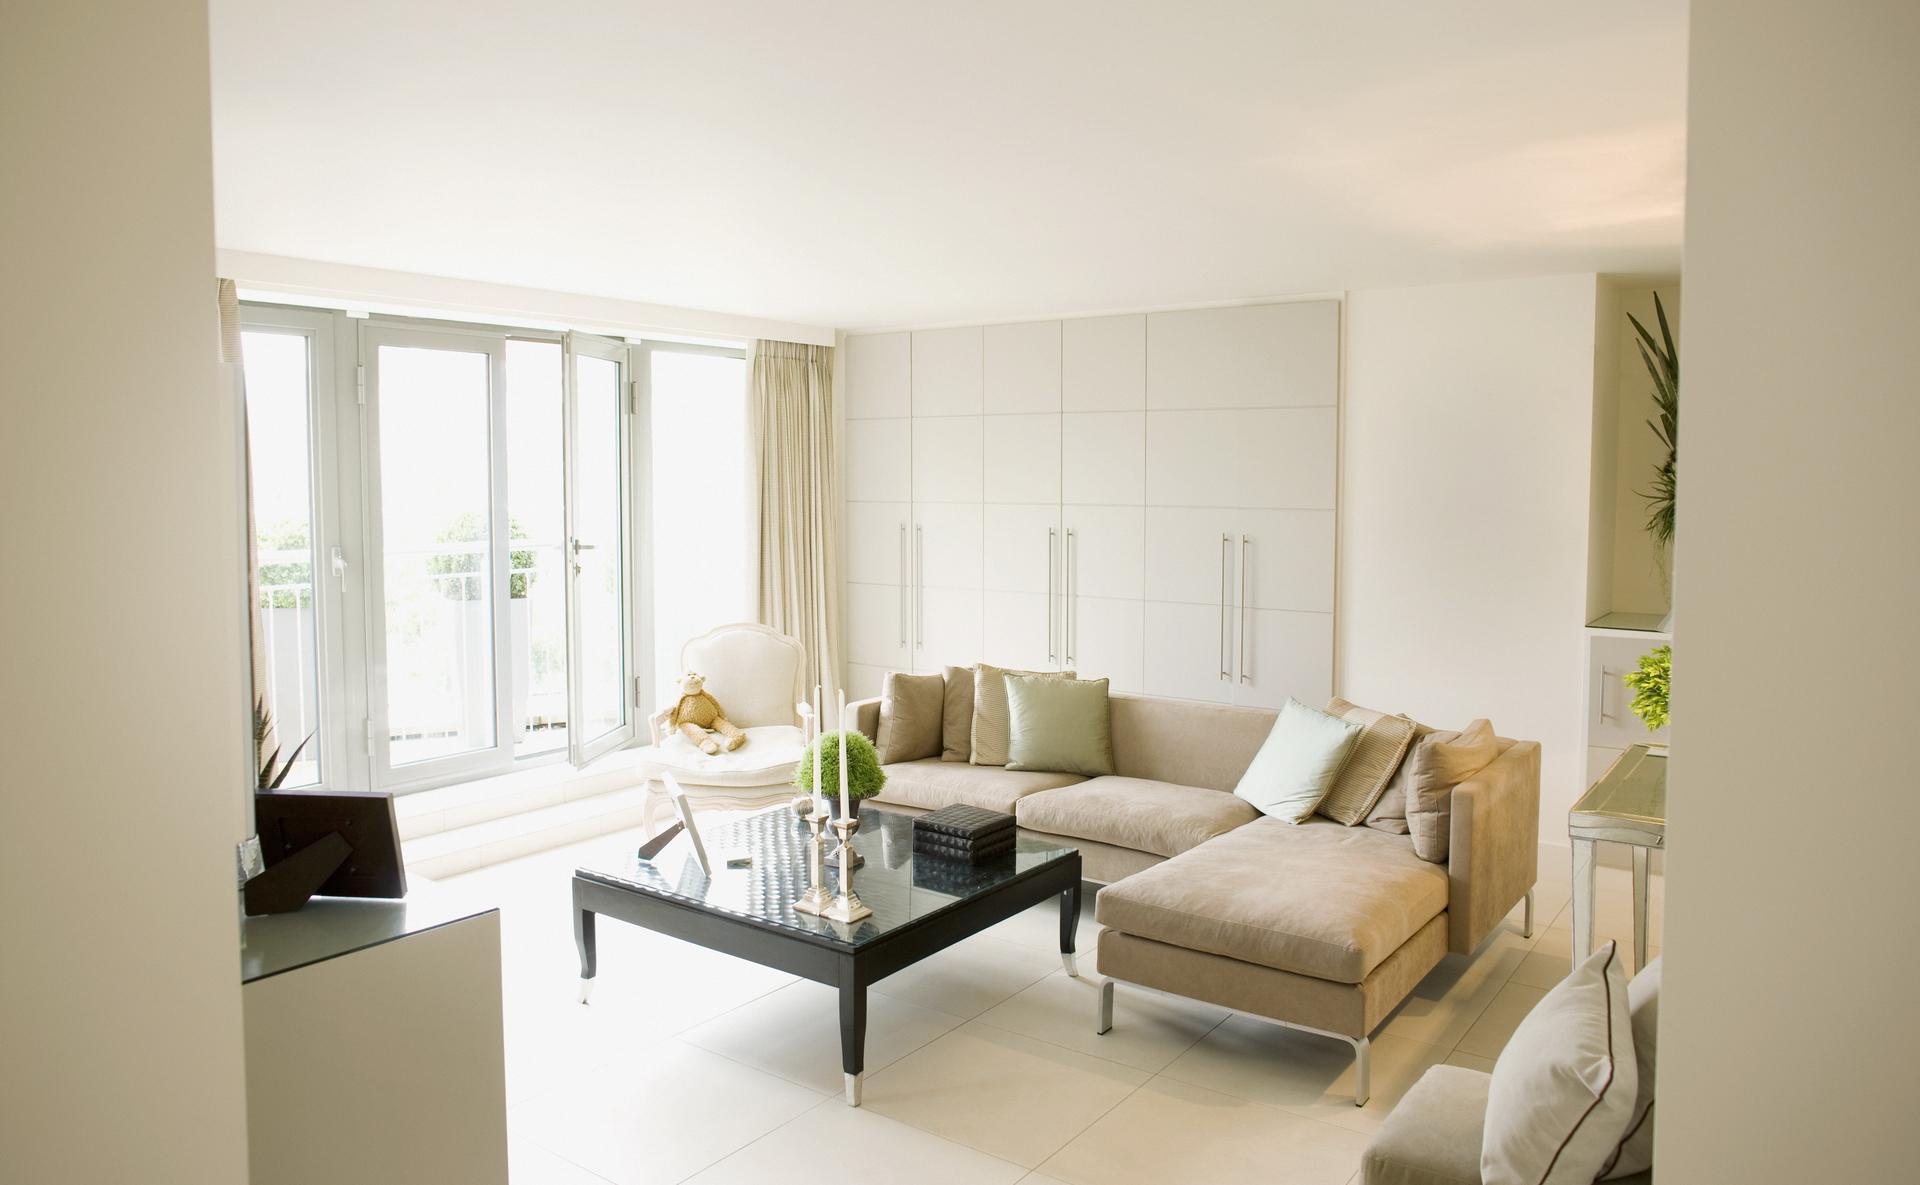 Бежевый и белый цвета в интерьере гостиной в стиле минимализм